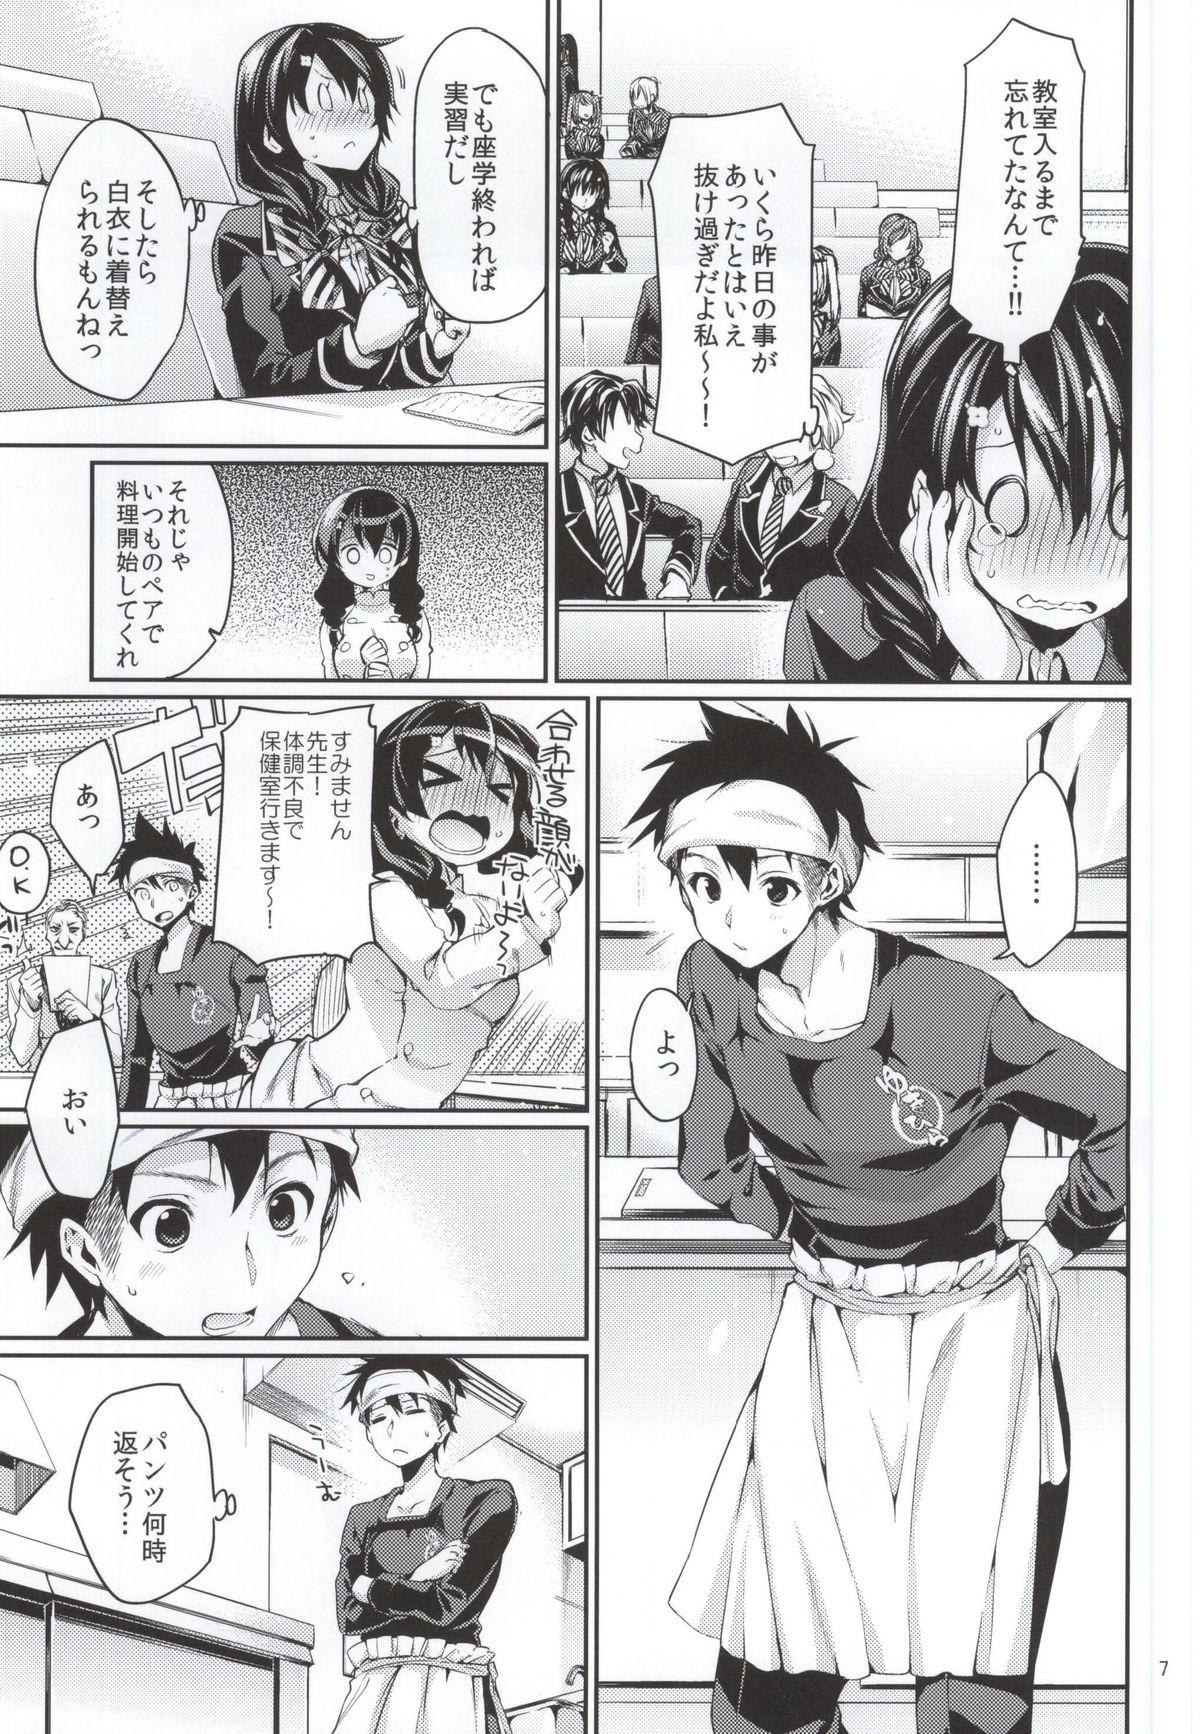 Penetration Houkago Hospitality 2 - Shokugeki no soma Nasty - Page 4